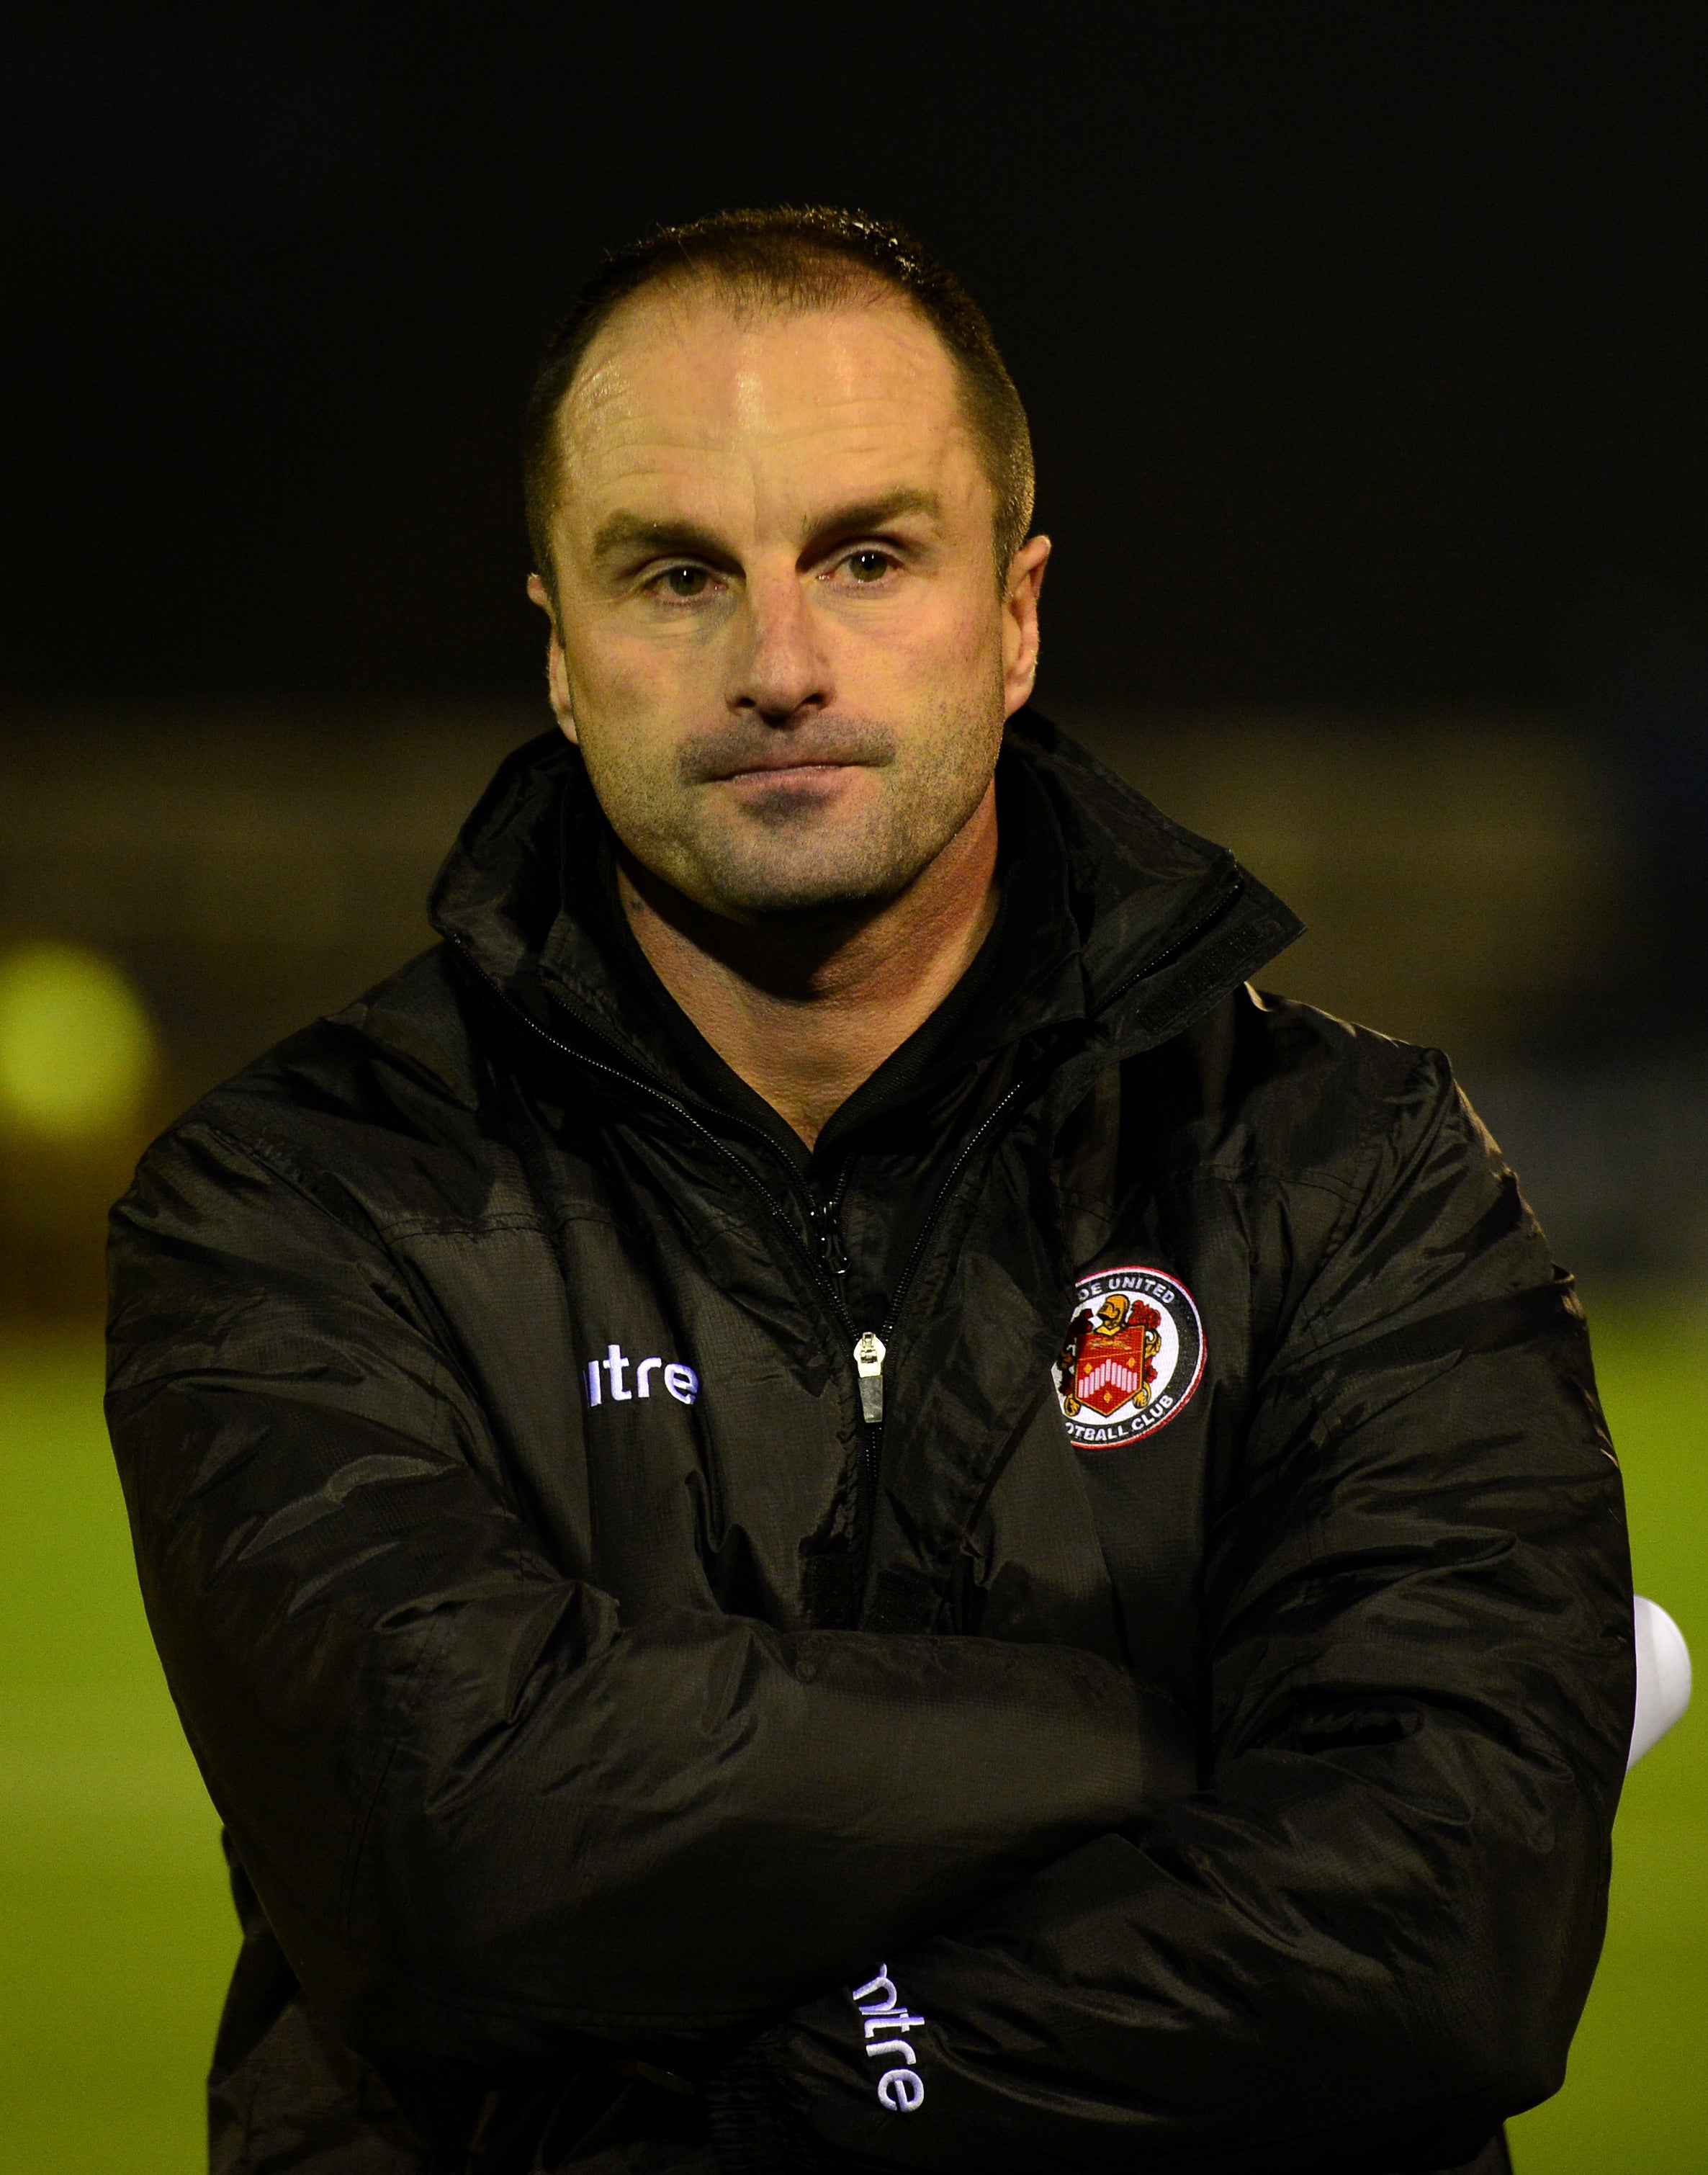 Darren Kelly is Newport's new sporting director